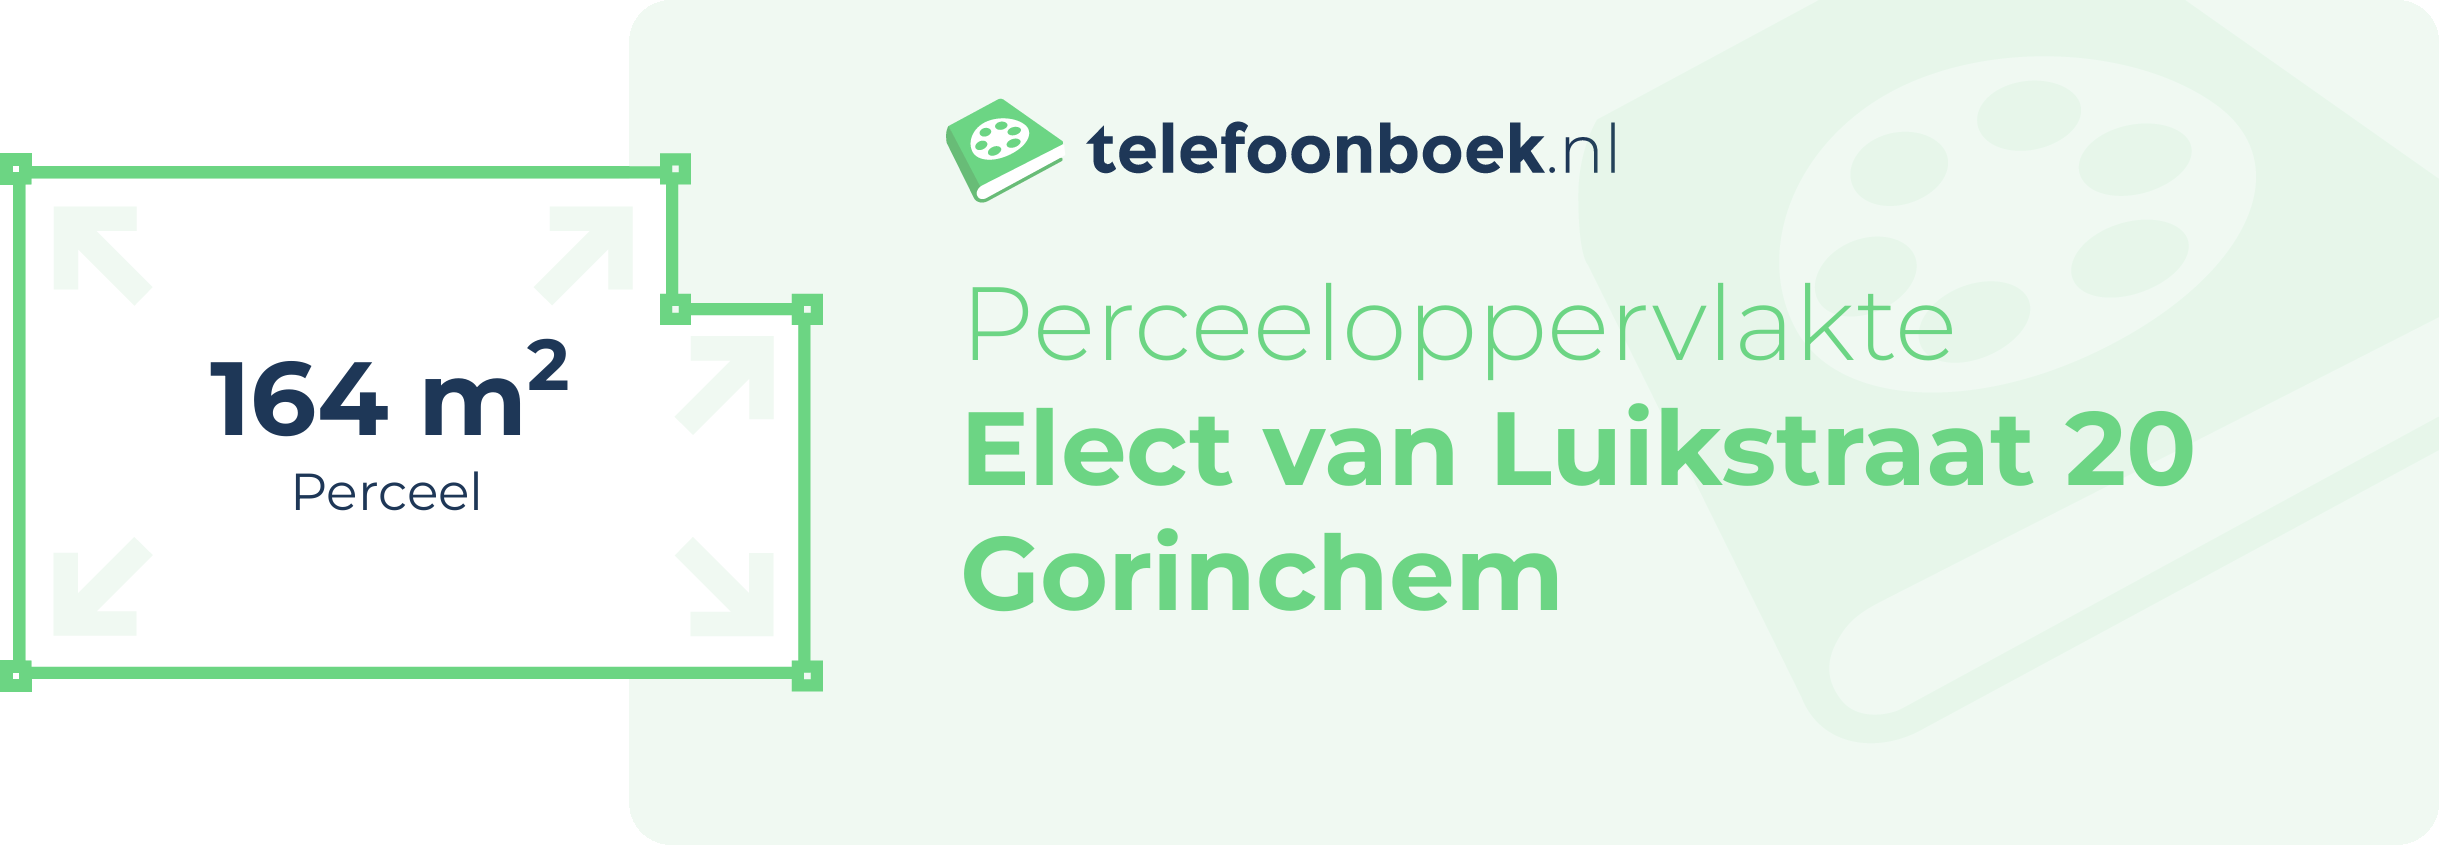 Perceeloppervlakte Elect Van Luikstraat 20 Gorinchem